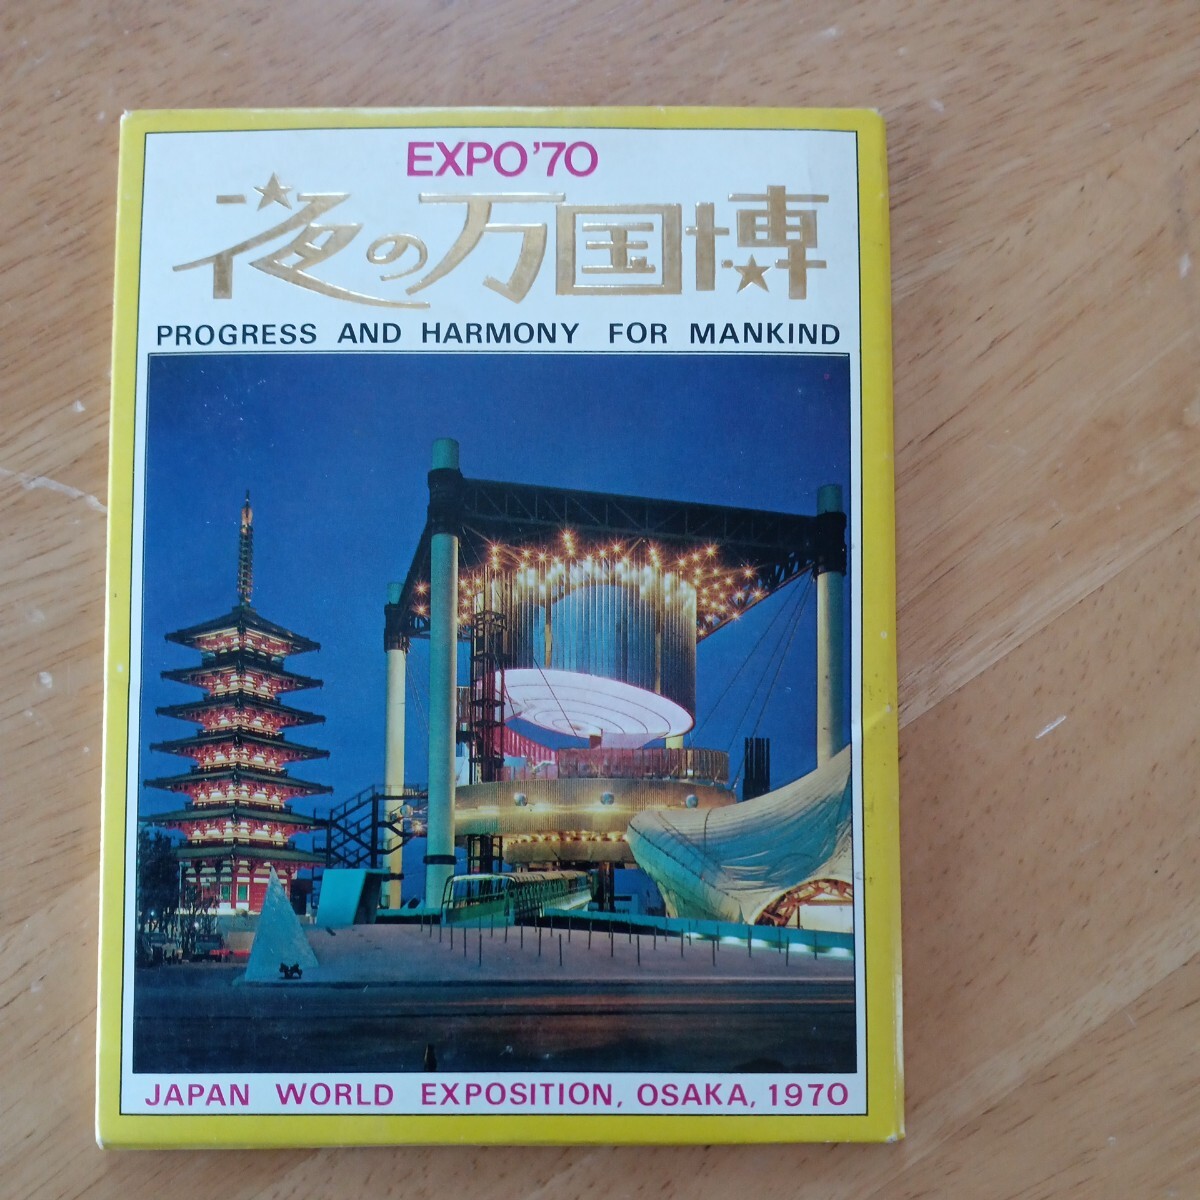 【送料無料】夜の万国博 大阪 万国博覧会 1970年 EXPO70 ポストカード レトロ 日本 人類の進歩と調和 昭和 懐かしい_画像1